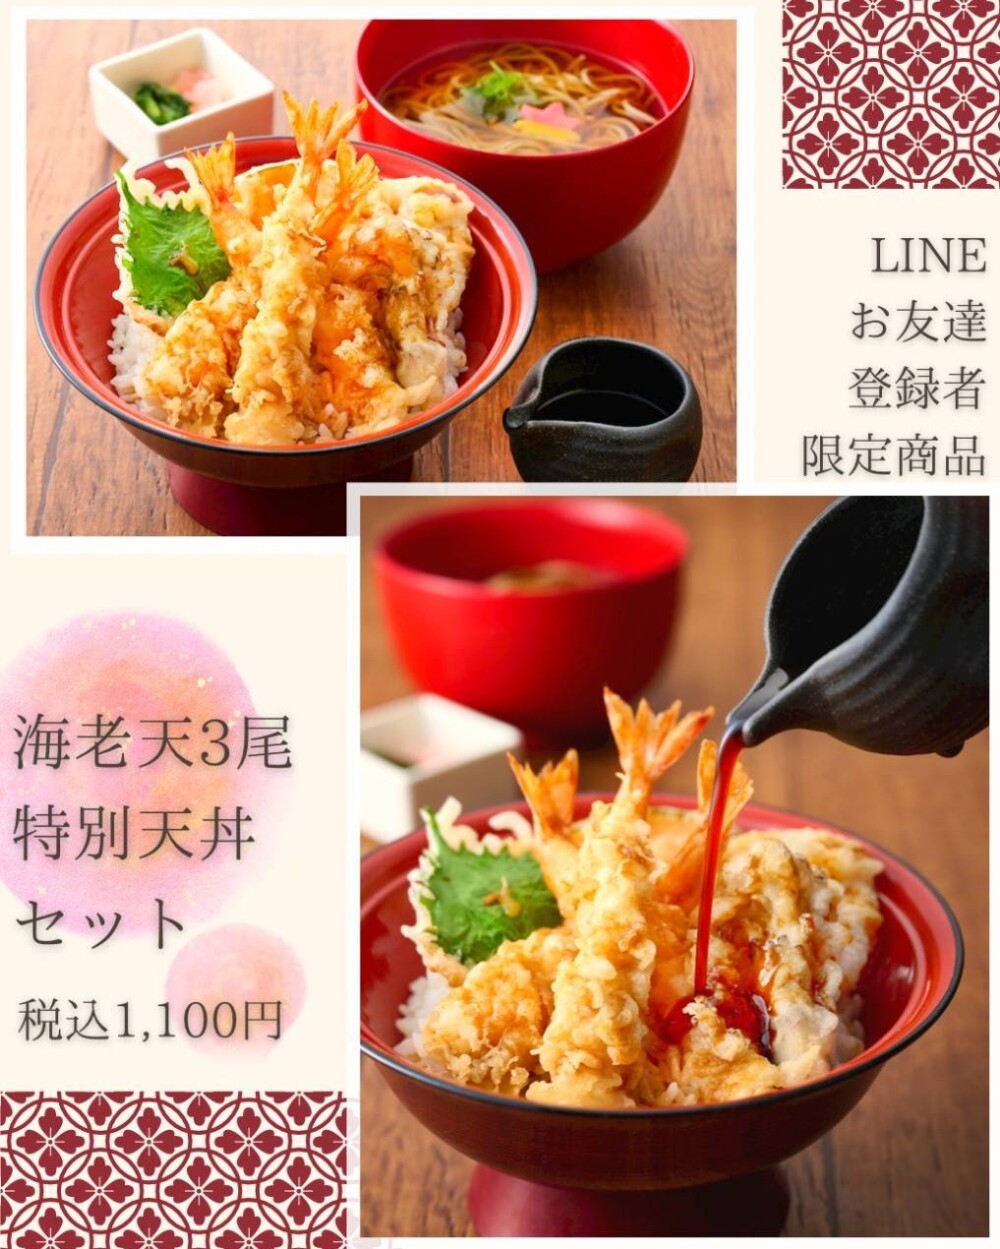 【LINEクーポン】海老が３尾の特別天丼セット